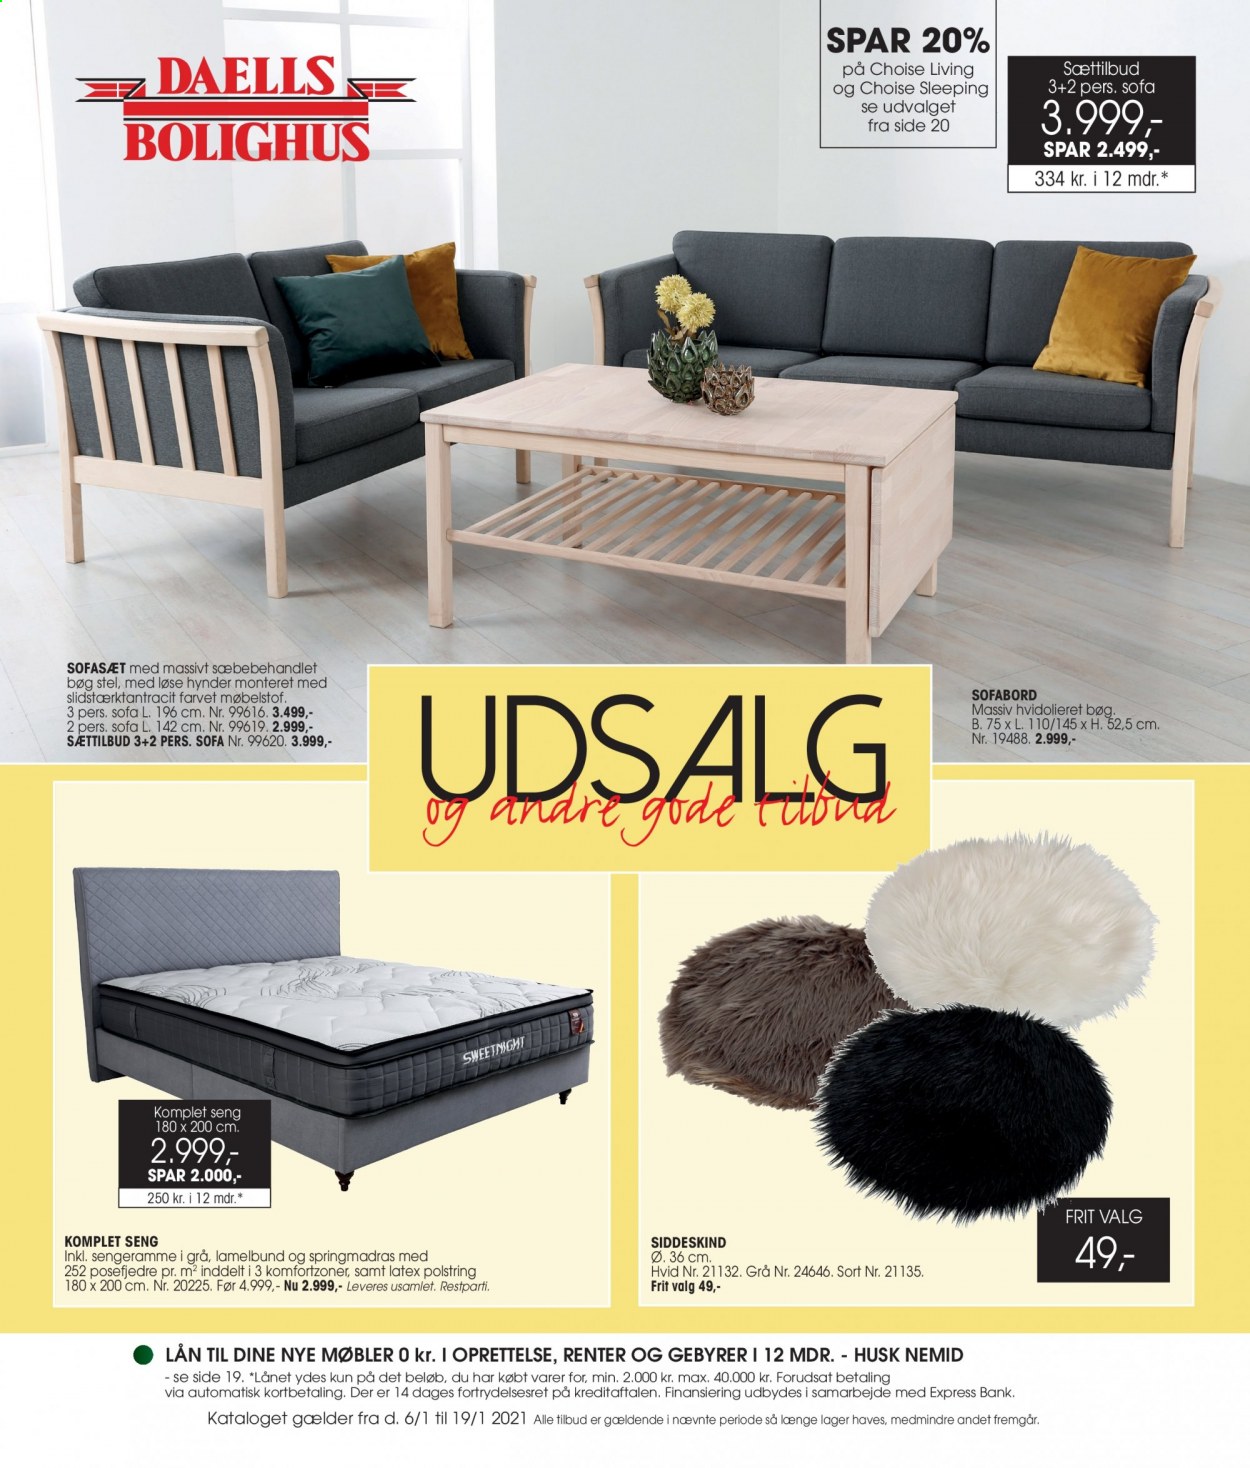 thumbnail - Daells Bolighus tilbud  - 6.1.2021 - 19.1.2021 - tilbudsprodukter - sofa, sofasæt, sofabord, seng. Side 1.